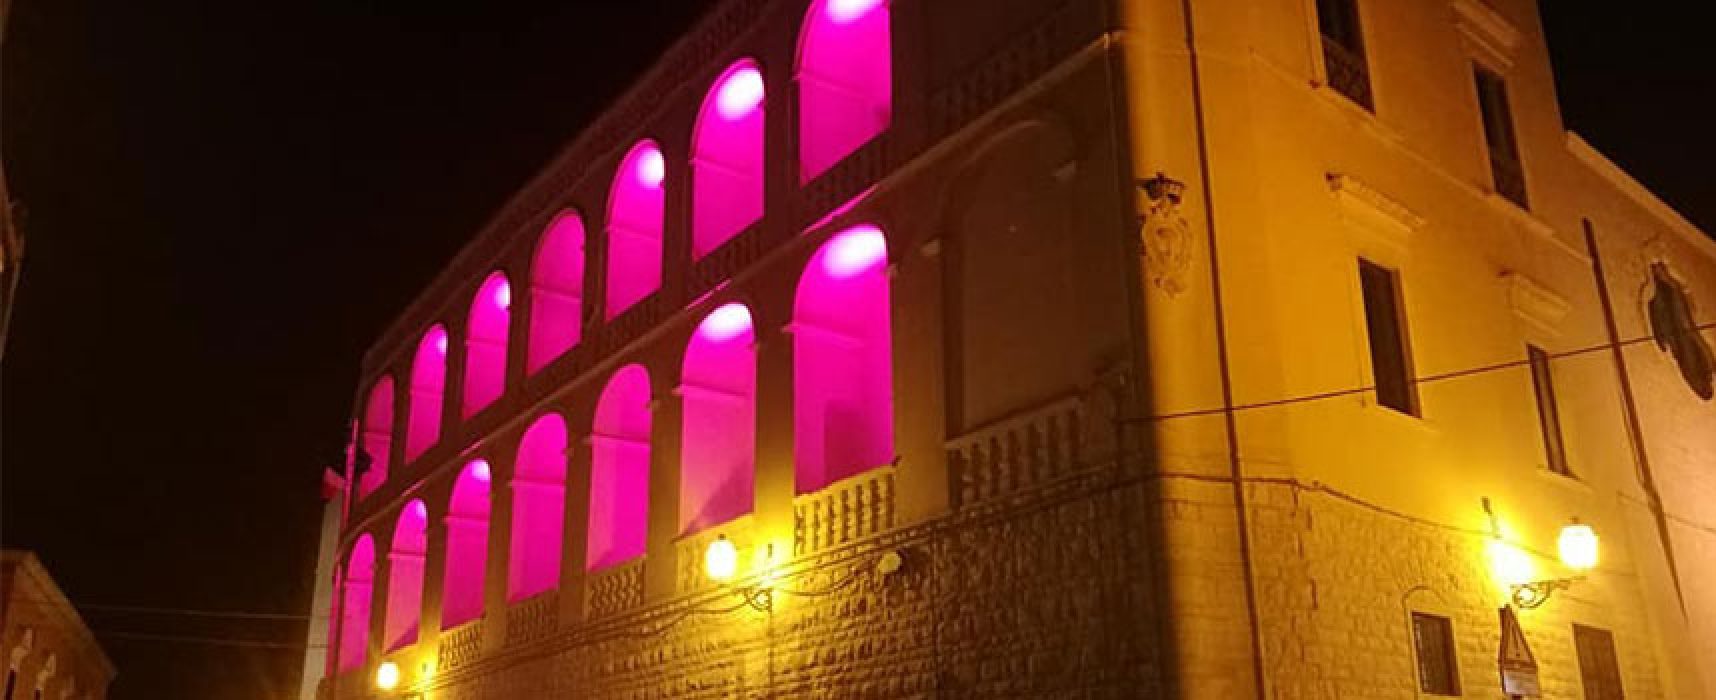 Prevenzione tumore seno, Palazzo San Domenico e Teatro Garibaldi illuminati di rosa